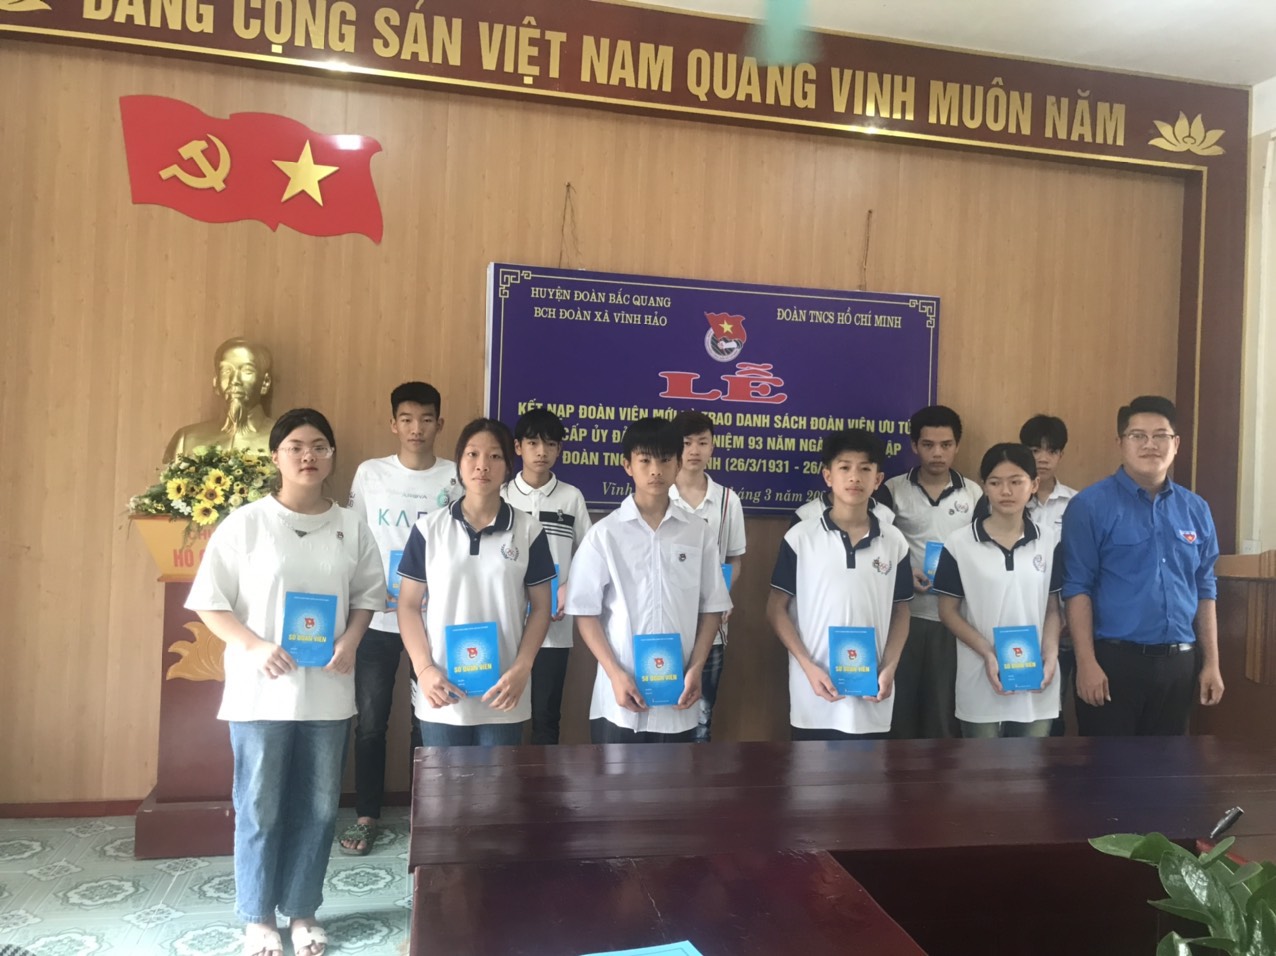 Trao danh sách Đoàn viên ưu tú cho Đảng nhân dịp kỷ niệm 93 năm Ngày thành lập Đoàn TNCS Hồ Chí Minh